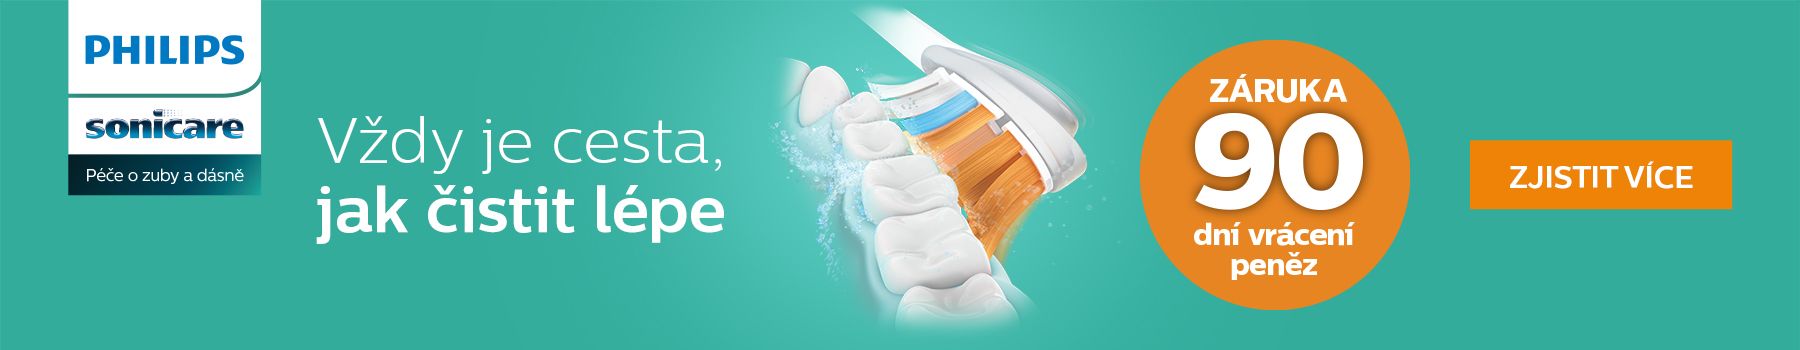 Philips Sonicare, elektrický zubní kartáček, zdravé zuby, zdravé dásně